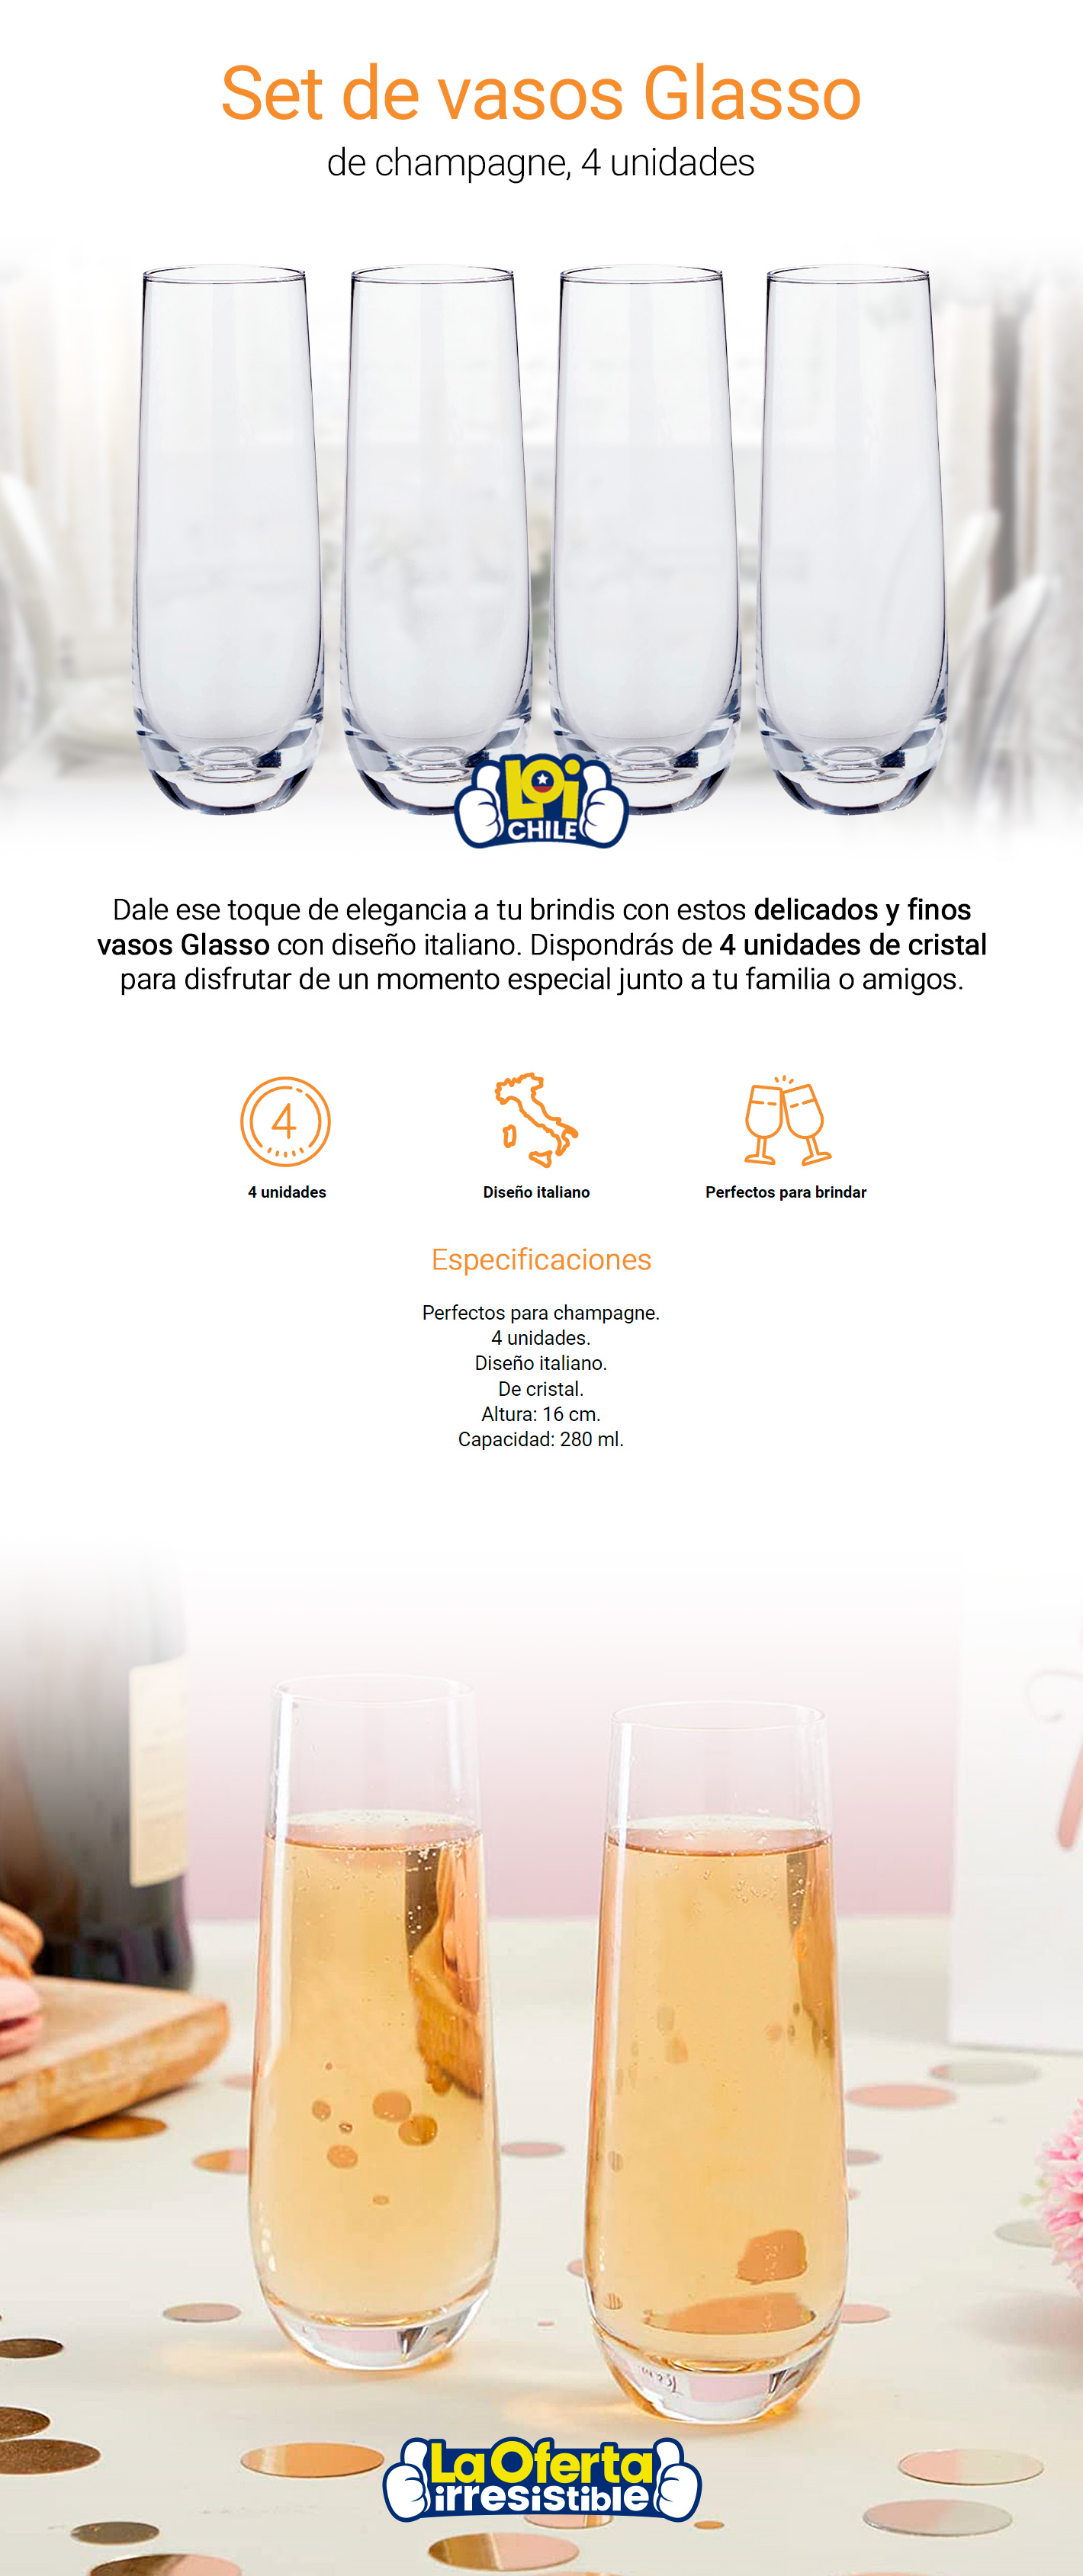 https://laoferta.com.uy/ml-cl/set-4-vasos-champagne-glasso/set-4-vasos-champagne-glasso-loi.jpg